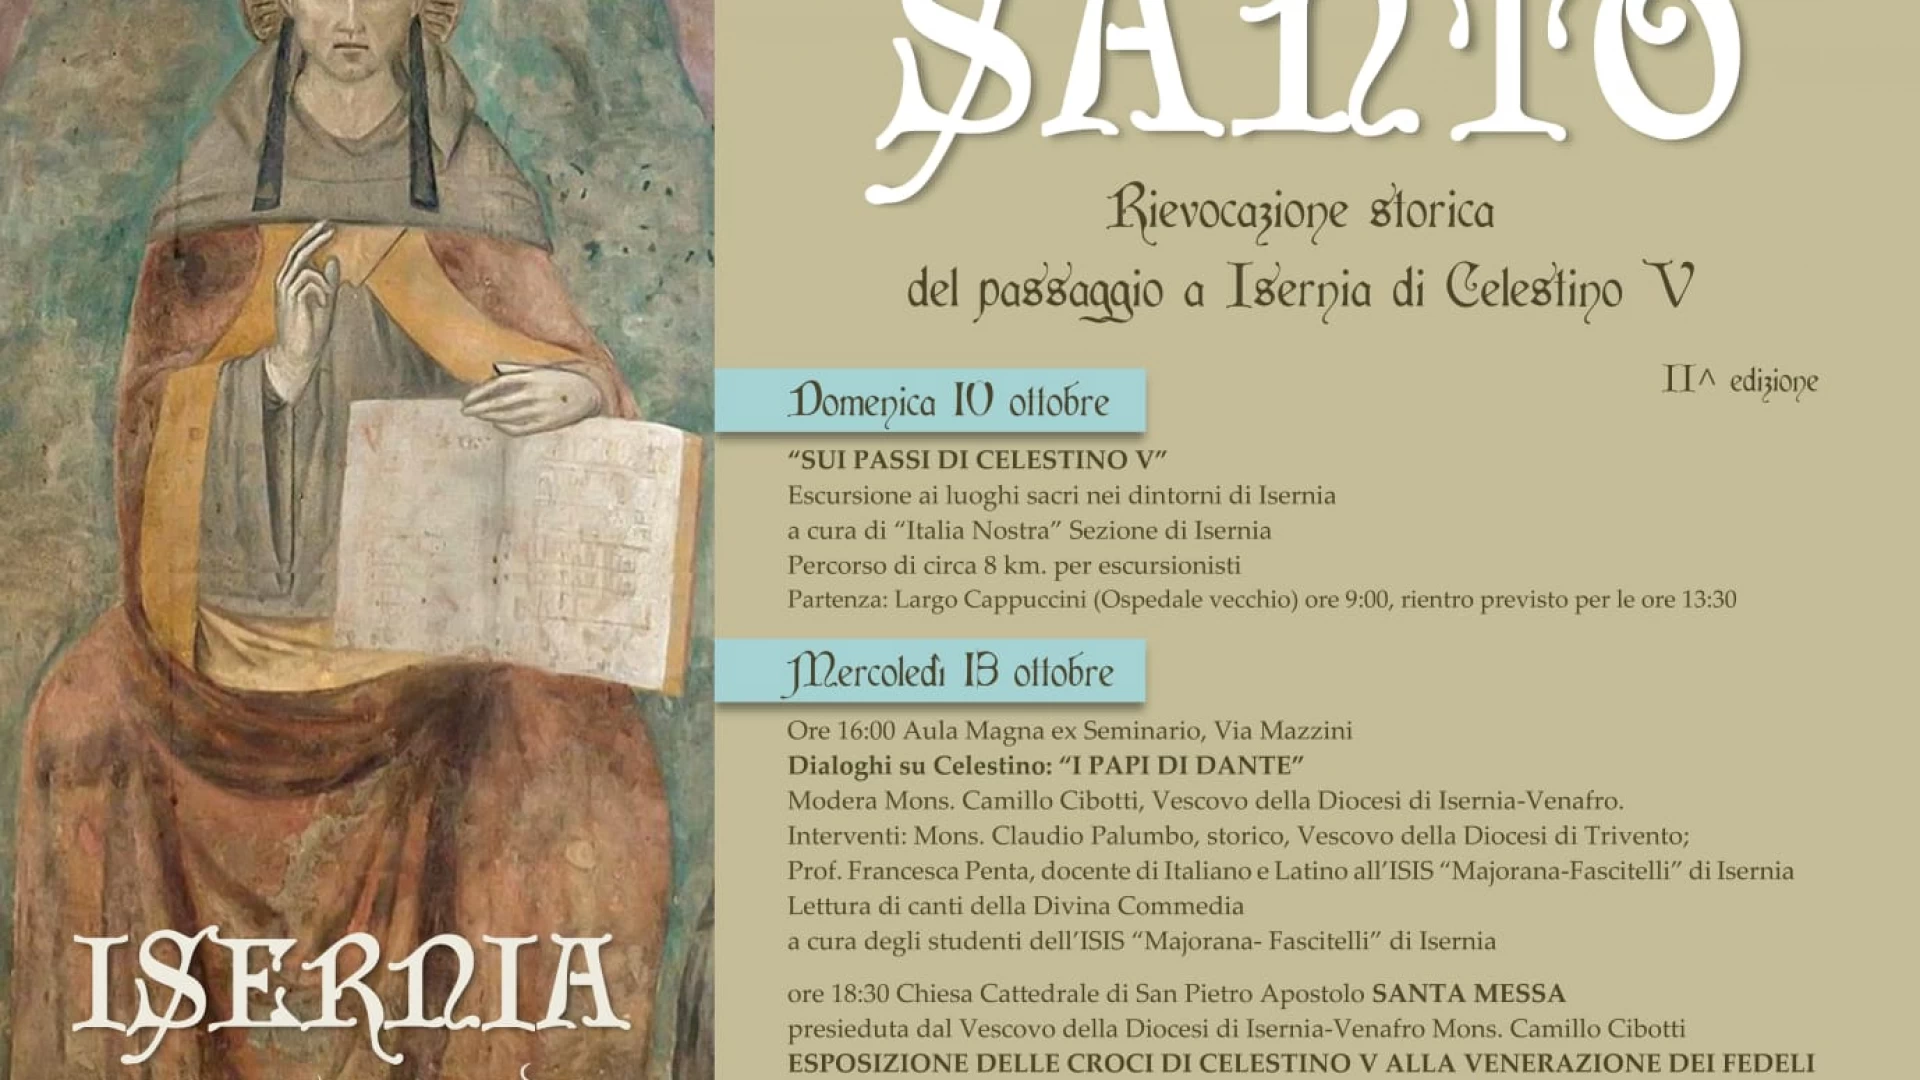 Isernia: “Il ritorno del Papa Santo”. Giovedì 14 ottobre la rievocazione storica del passaggio di Celestino V nel 1294.